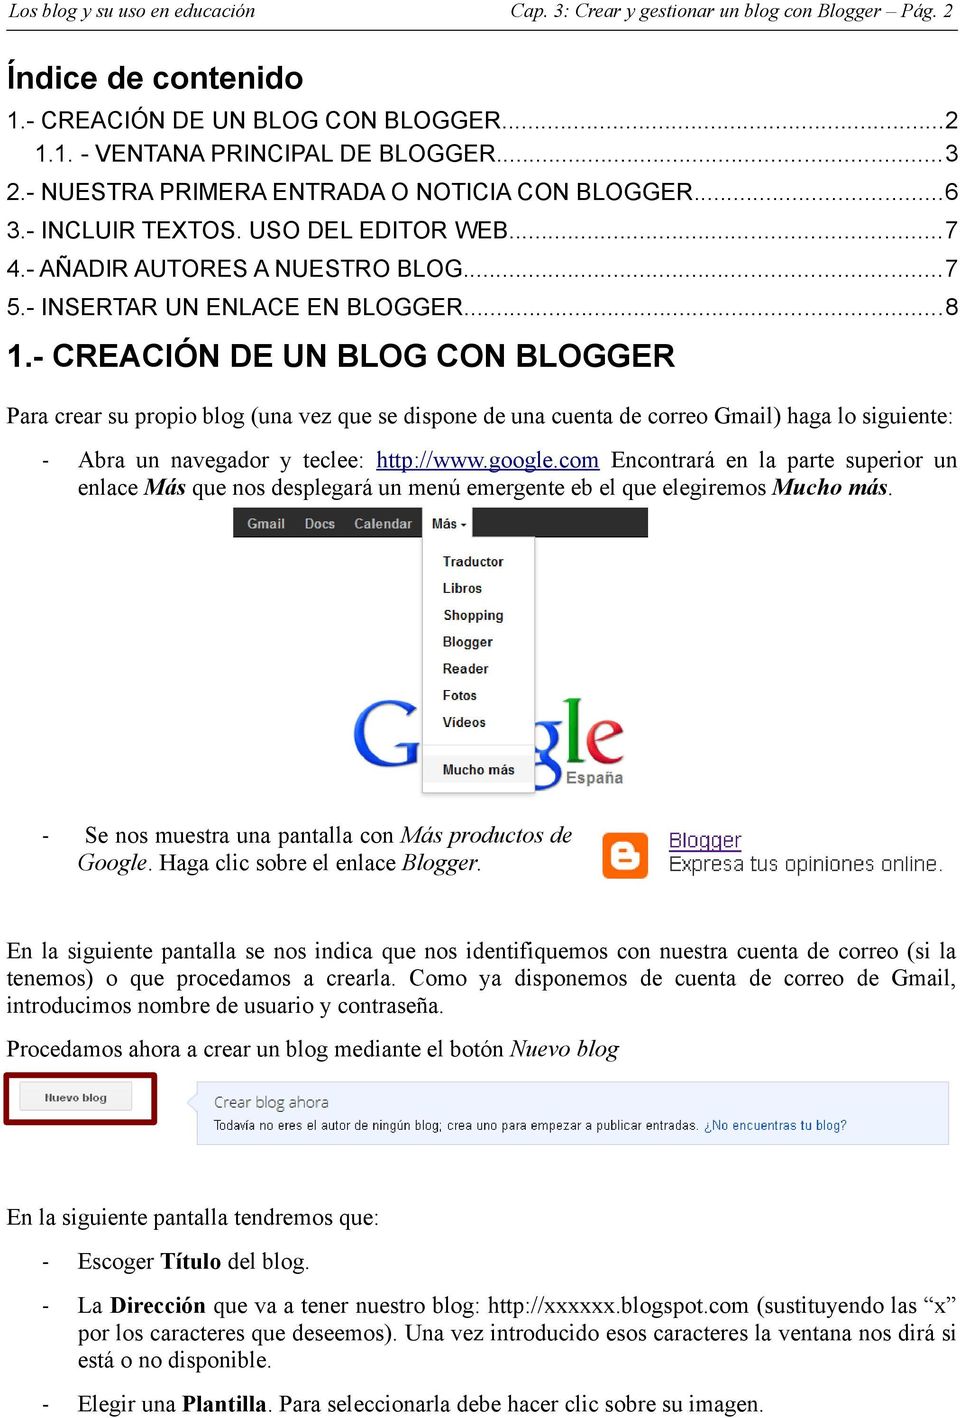 - CREACIÓN DE UN BLOG CON BLOGGER Para crear su propio blog (una vez que se dispone de una cuenta de correo Gmail) haga lo siguiente: - Abra un navegador y teclee: http://www.google.